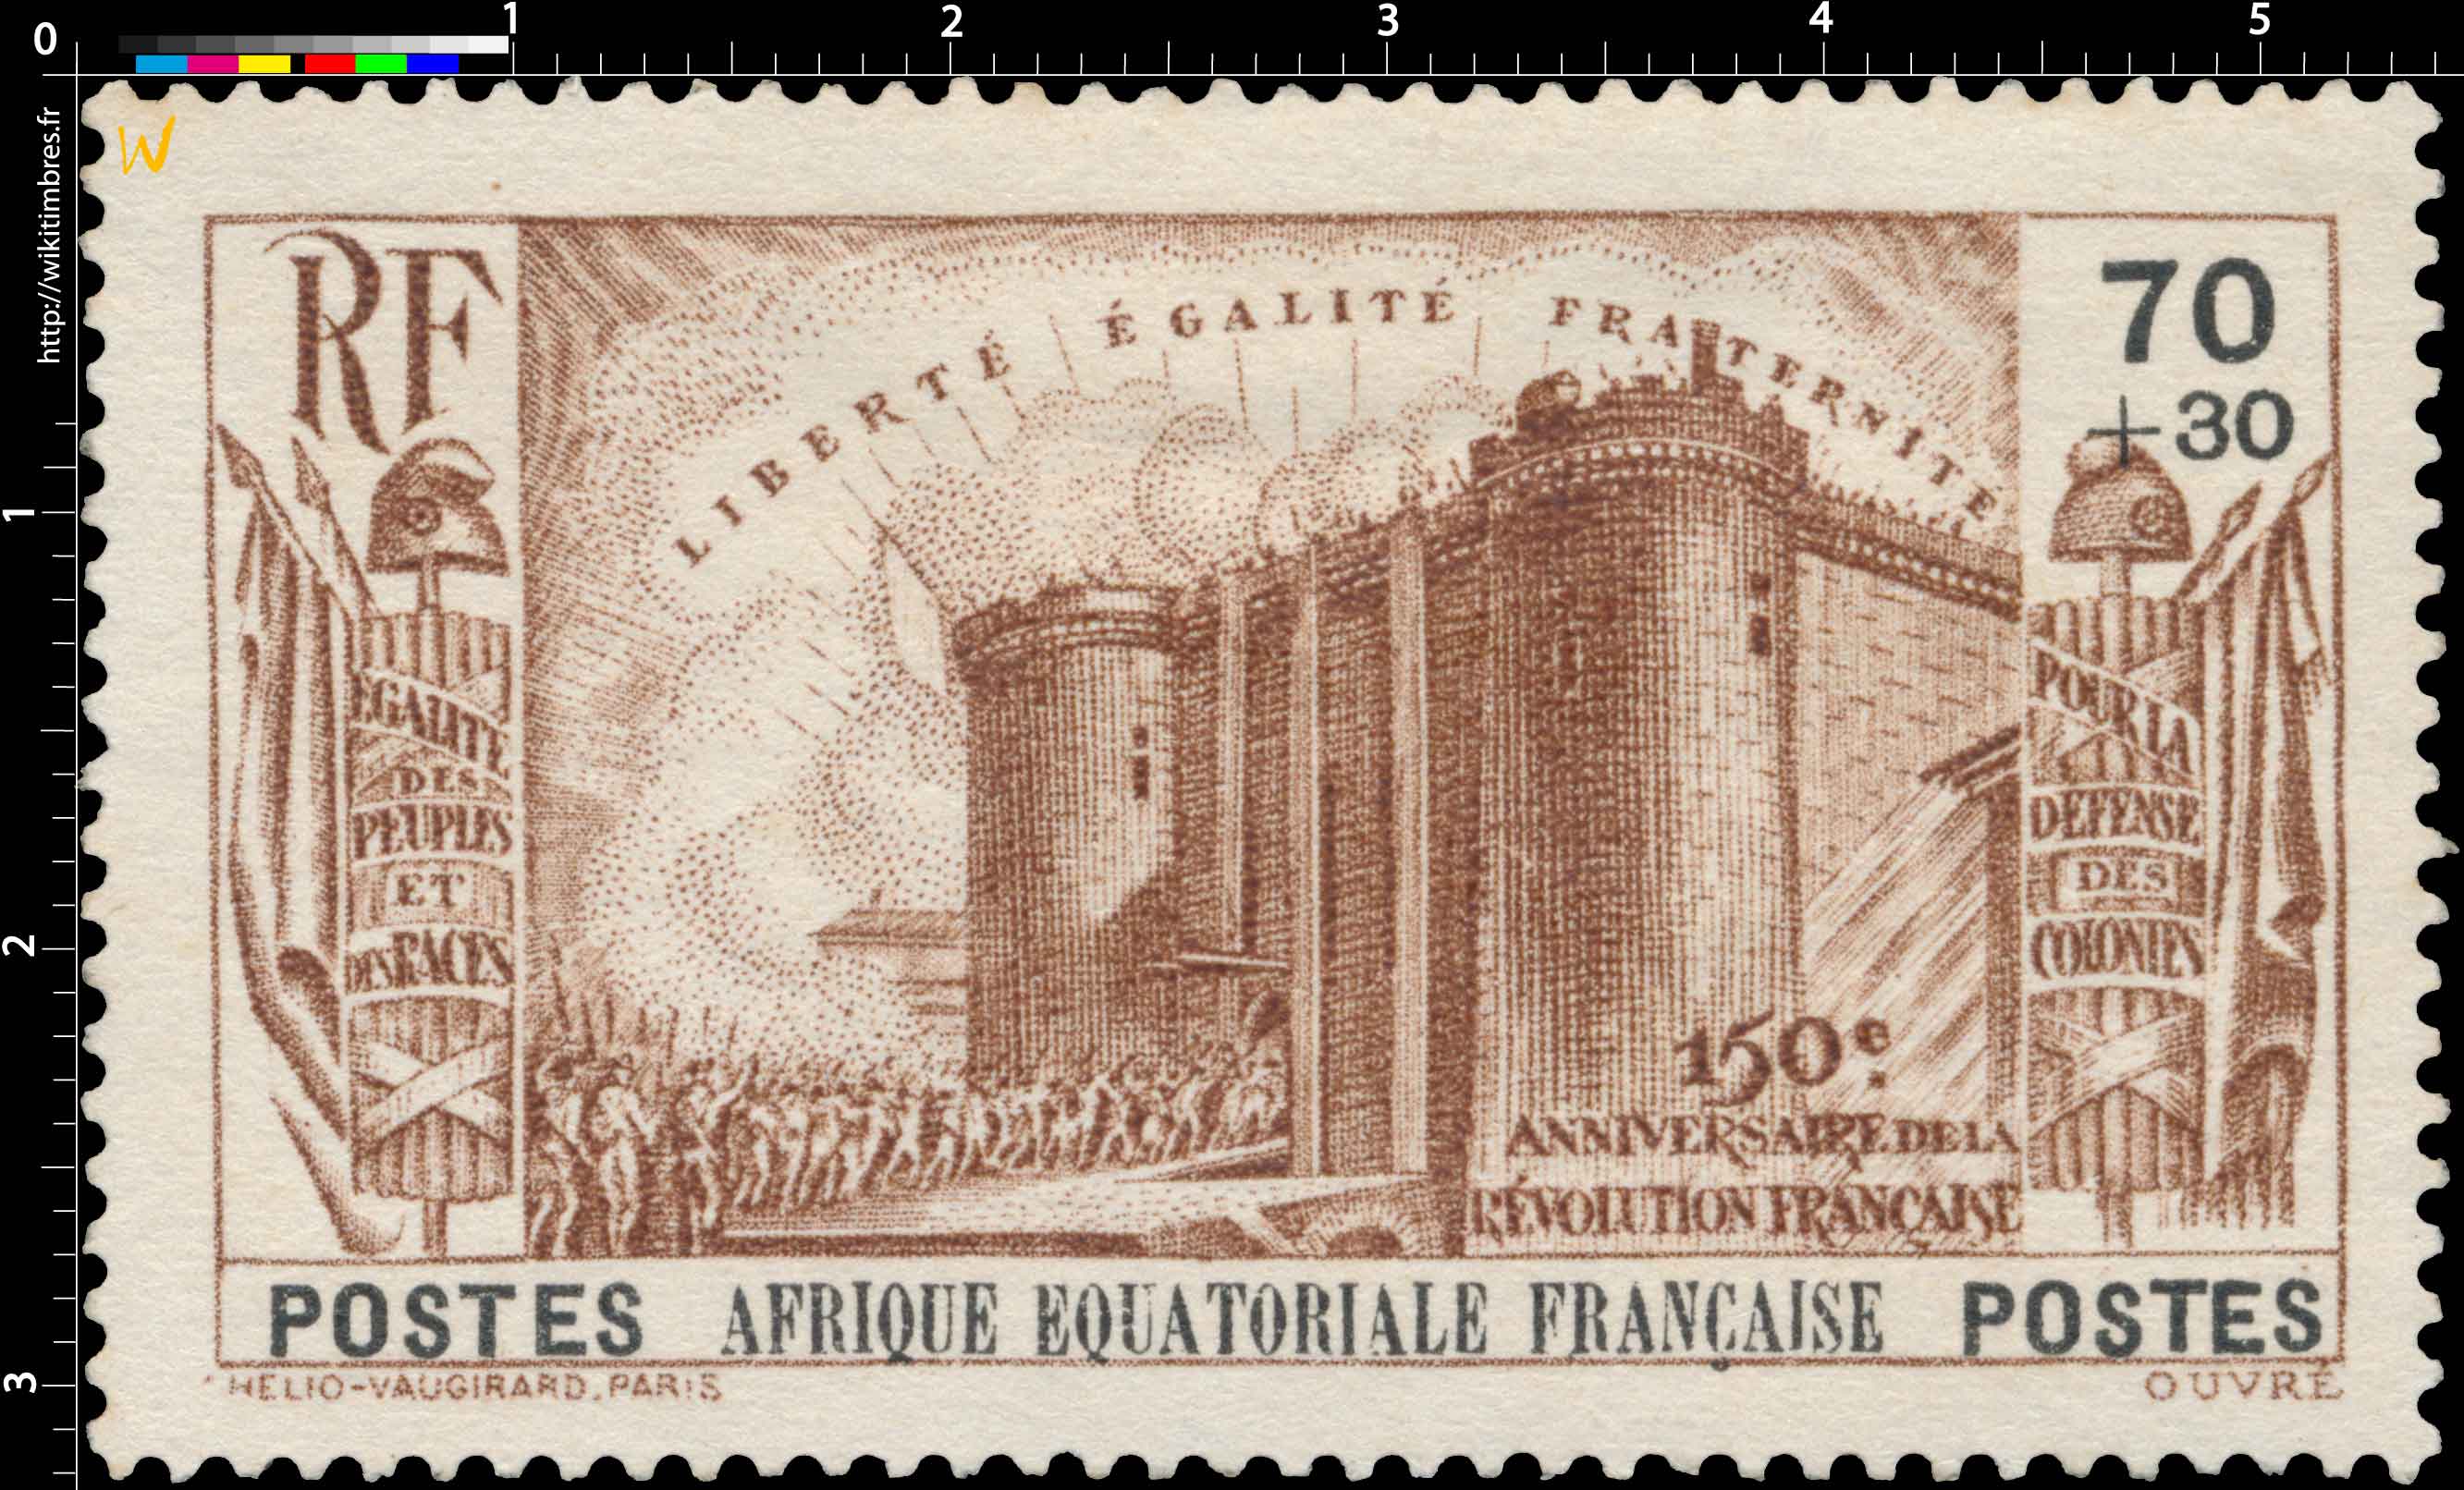 150e anniversaire de la Révolution française